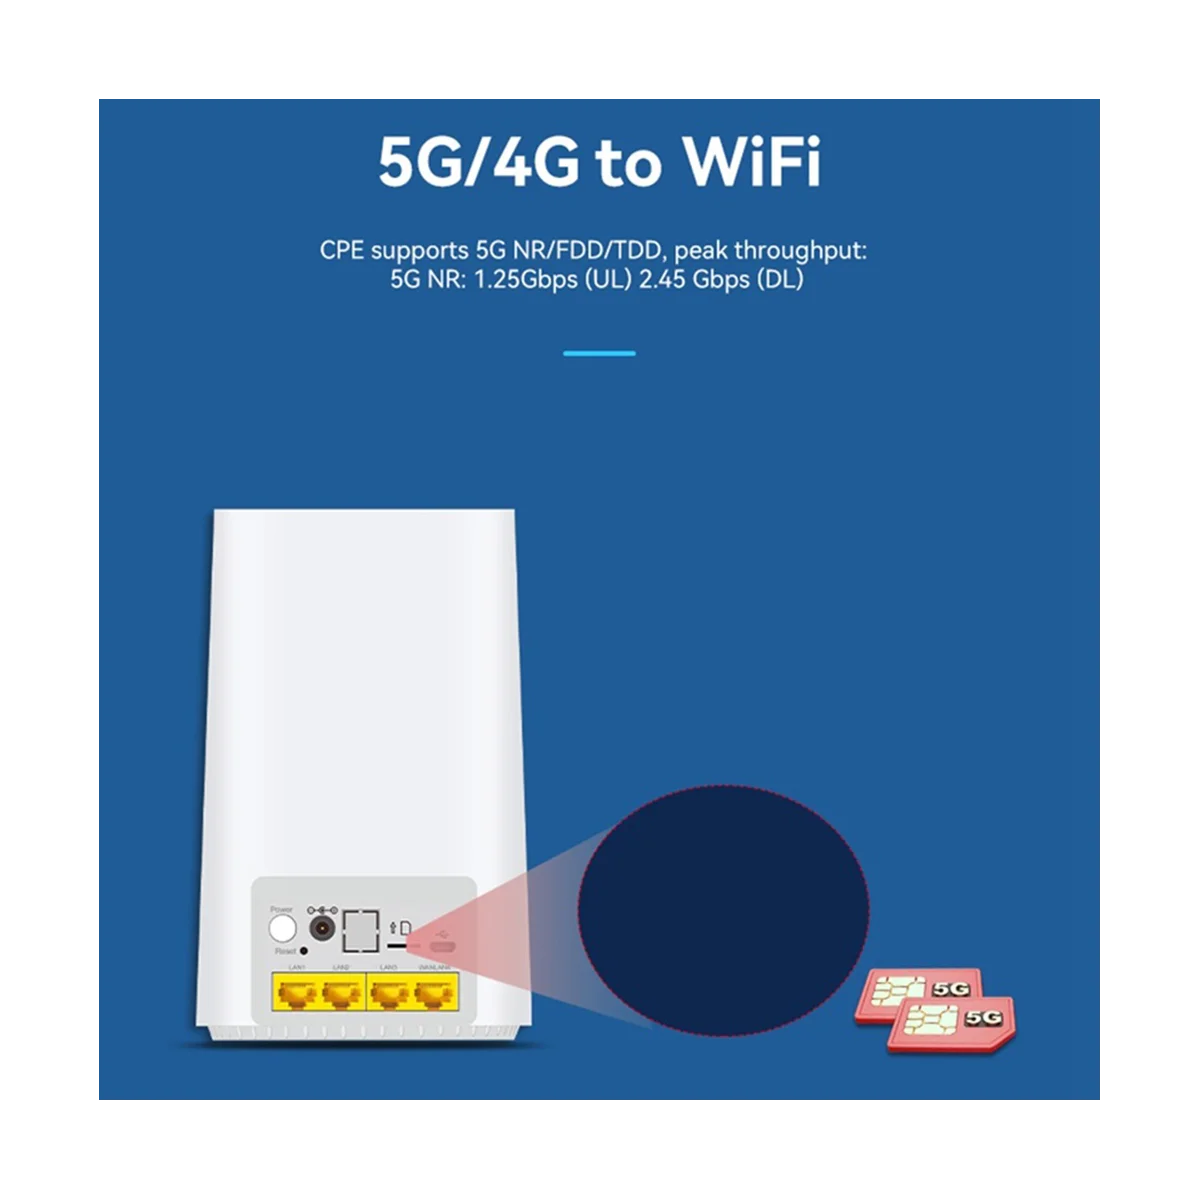 

Фрезерный Wi-Fi-роутер, Φ 2,4G и телефон, 4 порта Gigabit LAN со слотом для SIM-карты, встроенная фотовспышка для глобальных пользователей (штепсельная Вилка европейского стандарта)